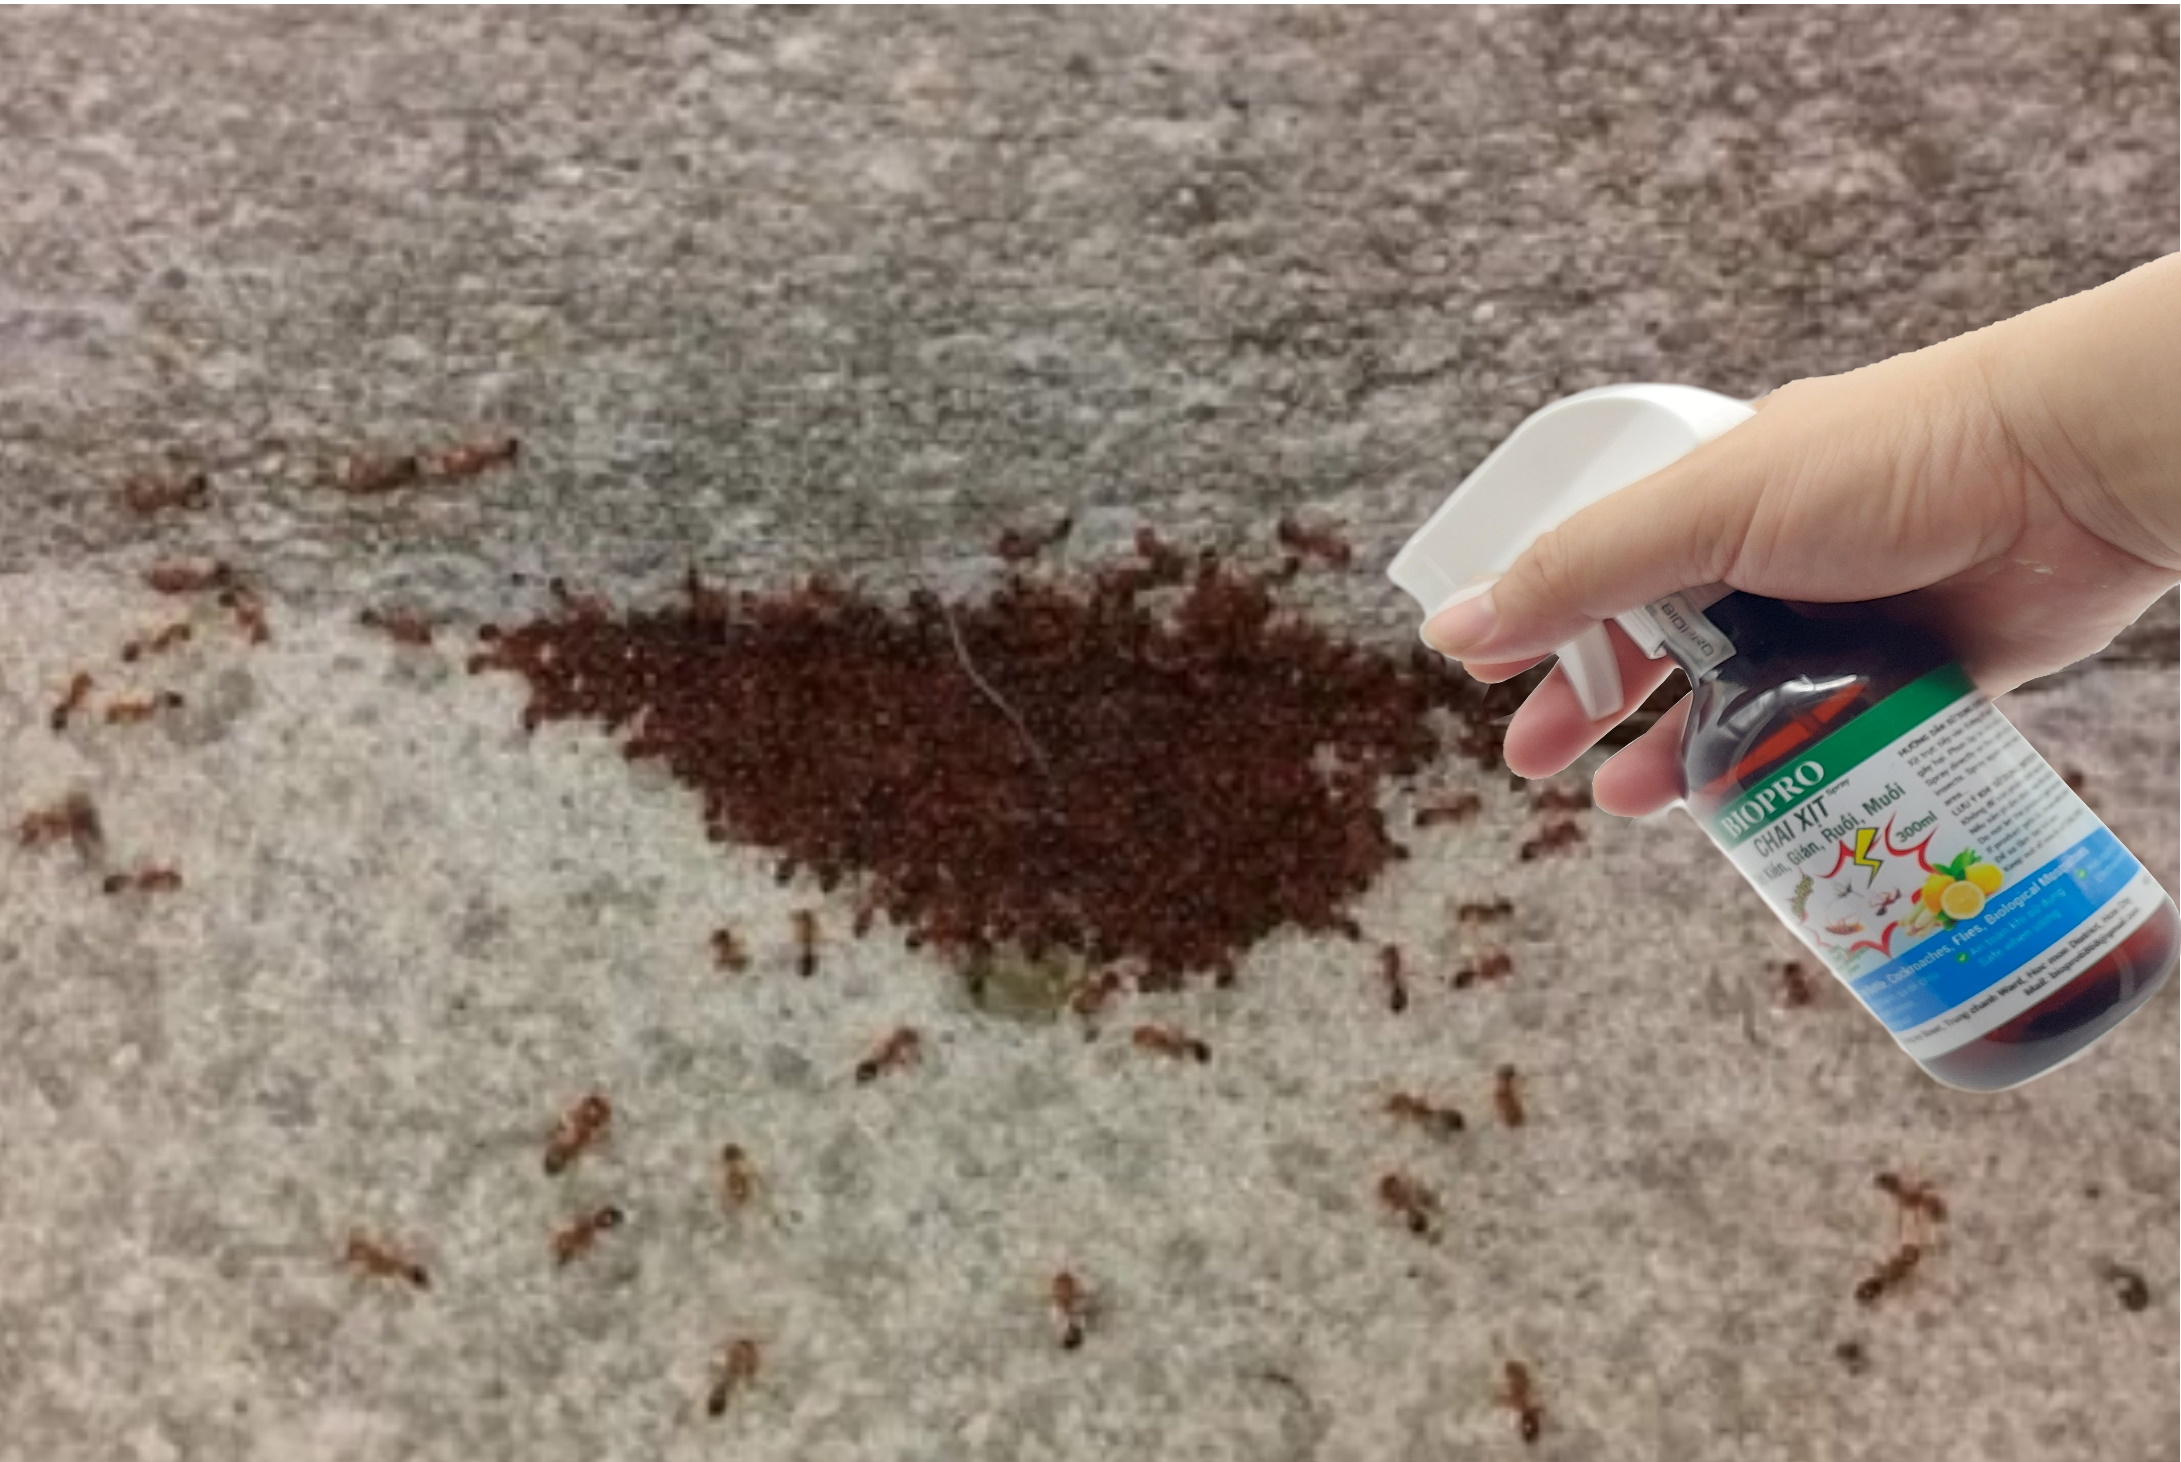 Chai xịt diệt kiến diệt gián ruồi muỗi Sinh học Biopro Chai 300ml Diệt sạch côn trùng gây hại An toàn Hiệu quả Sx tại VN